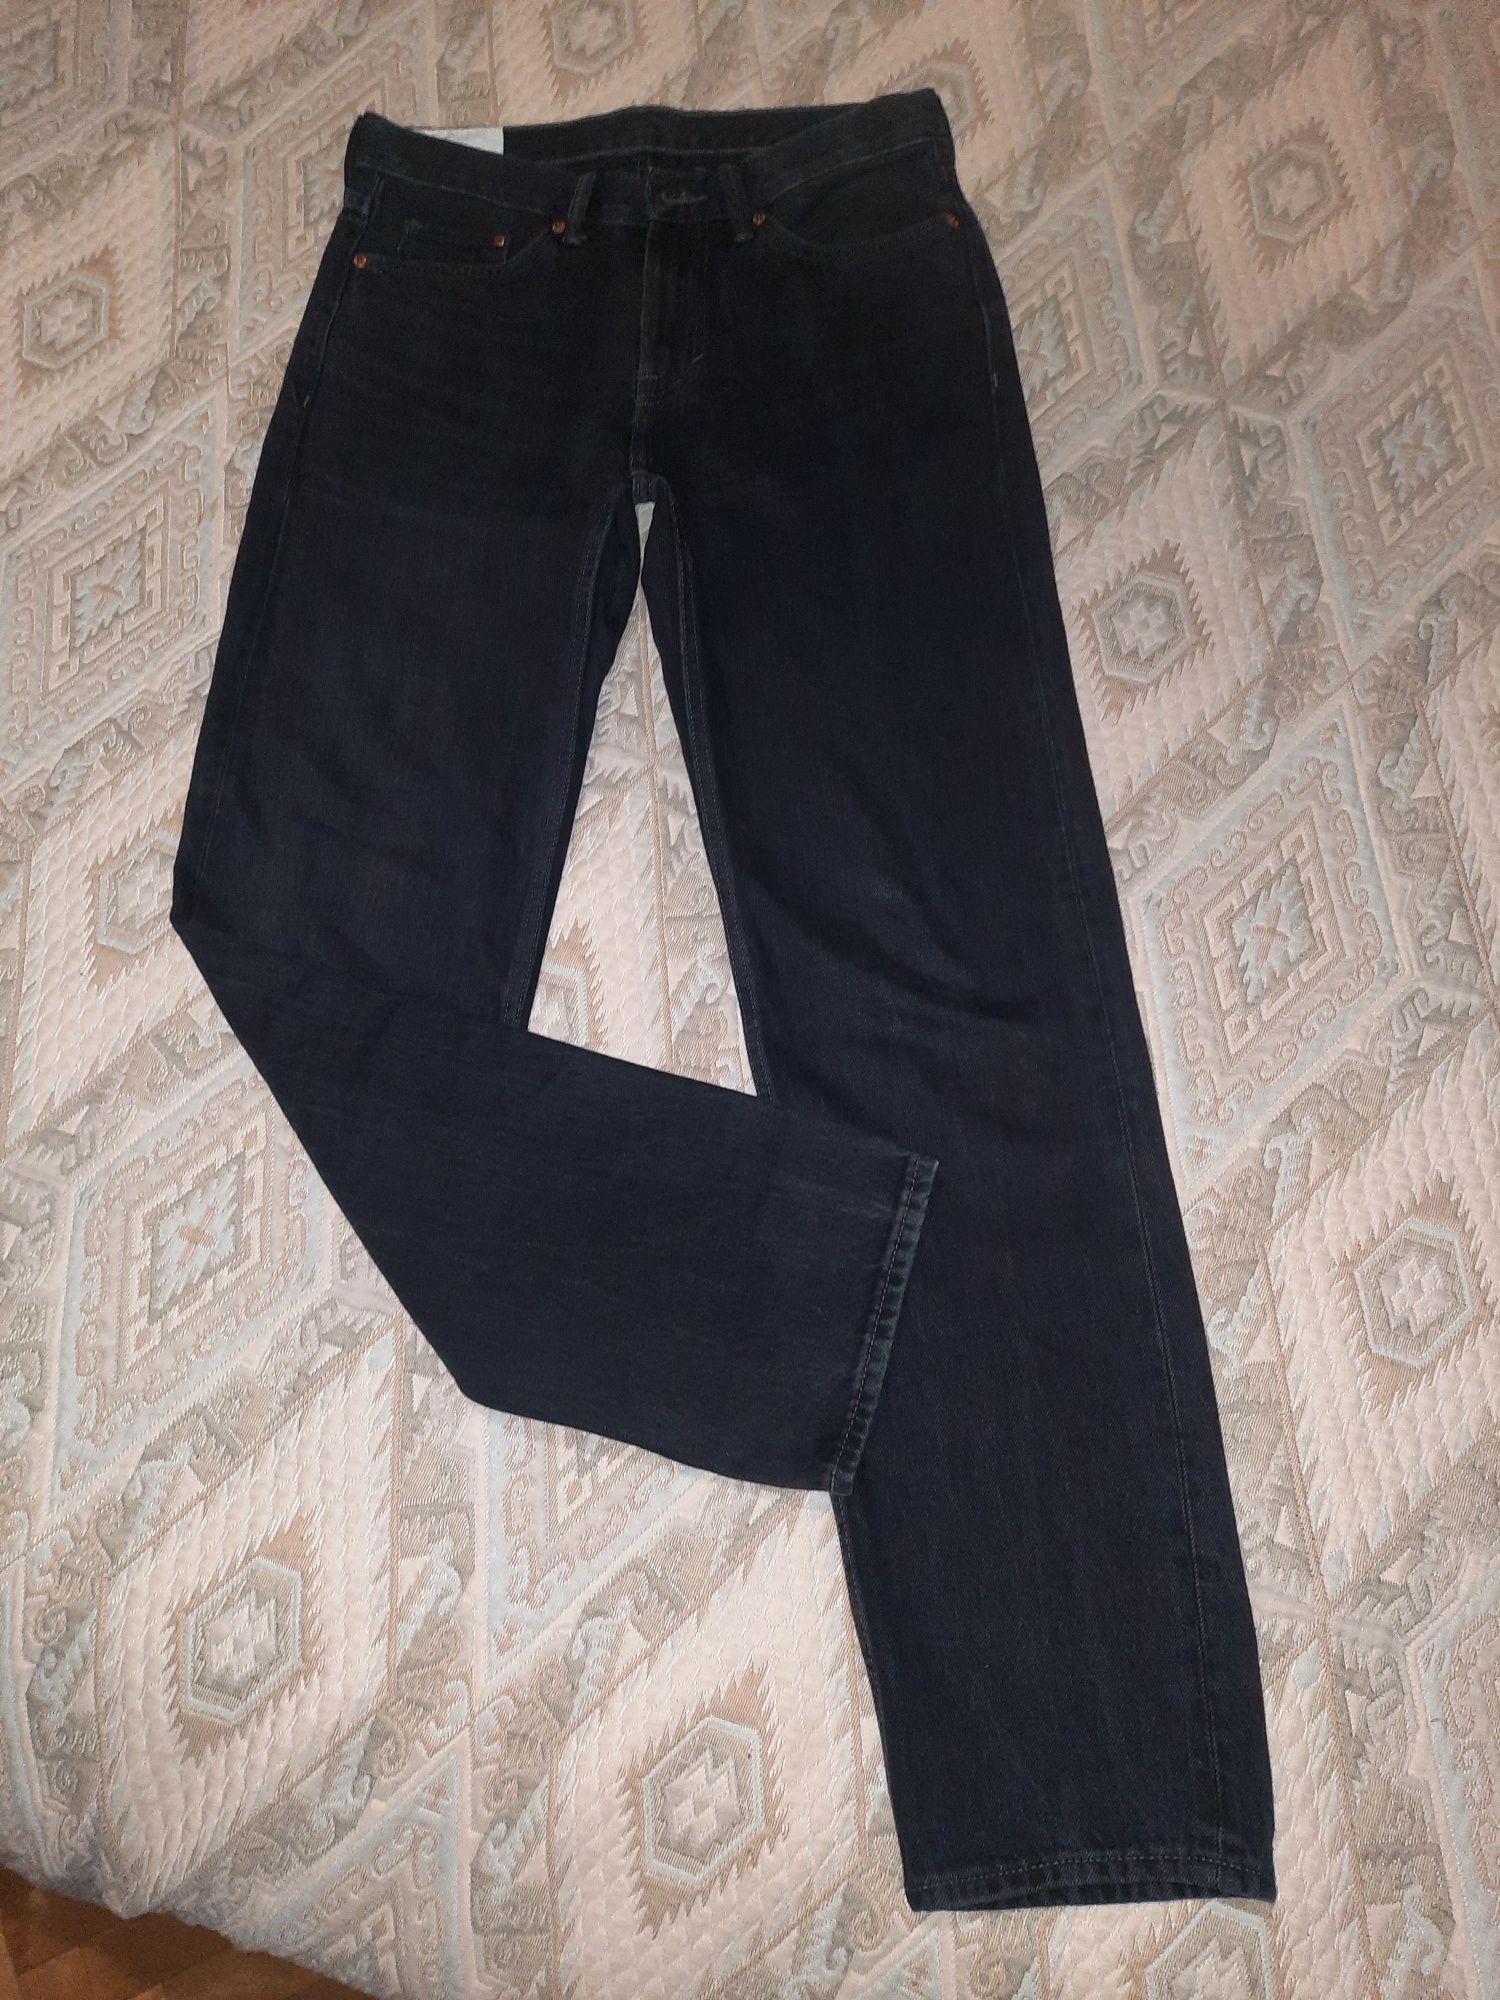 2 по ціні 1! Фірмові нові джинси H&M.Широка модель. р.31/32